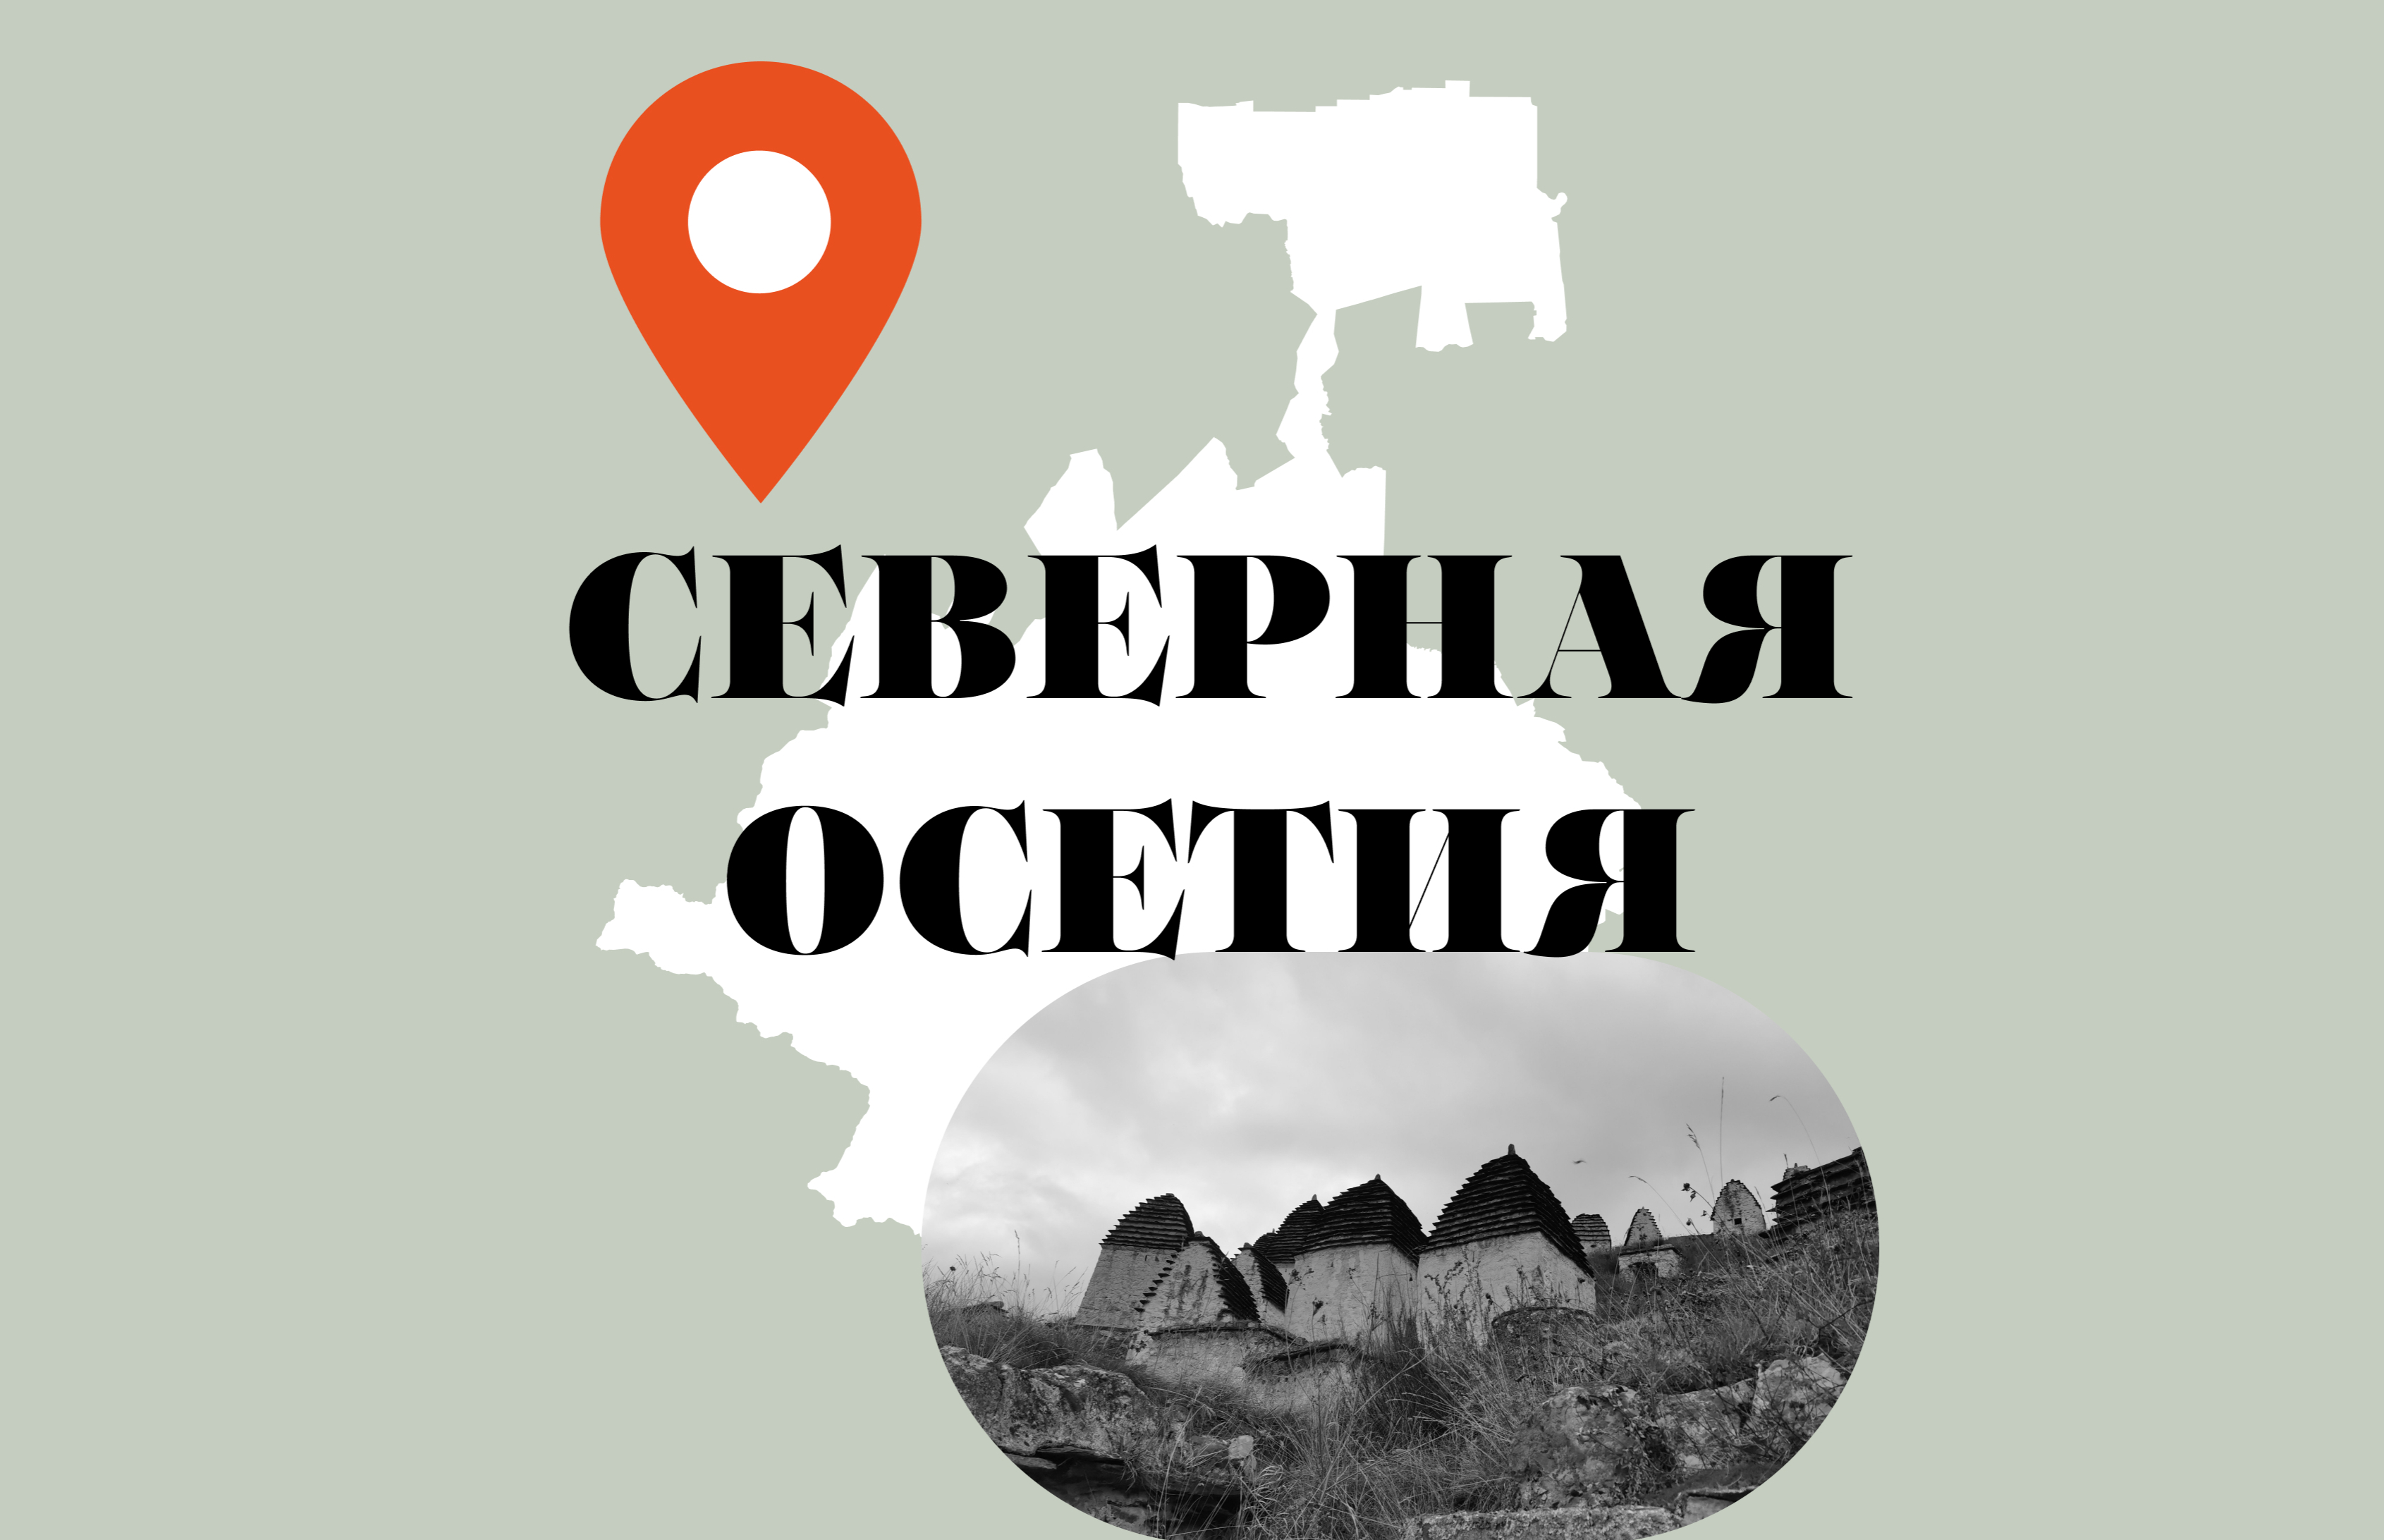 Небо, Терек, пироги: что посмотреть и попробовать в Северной Осетии